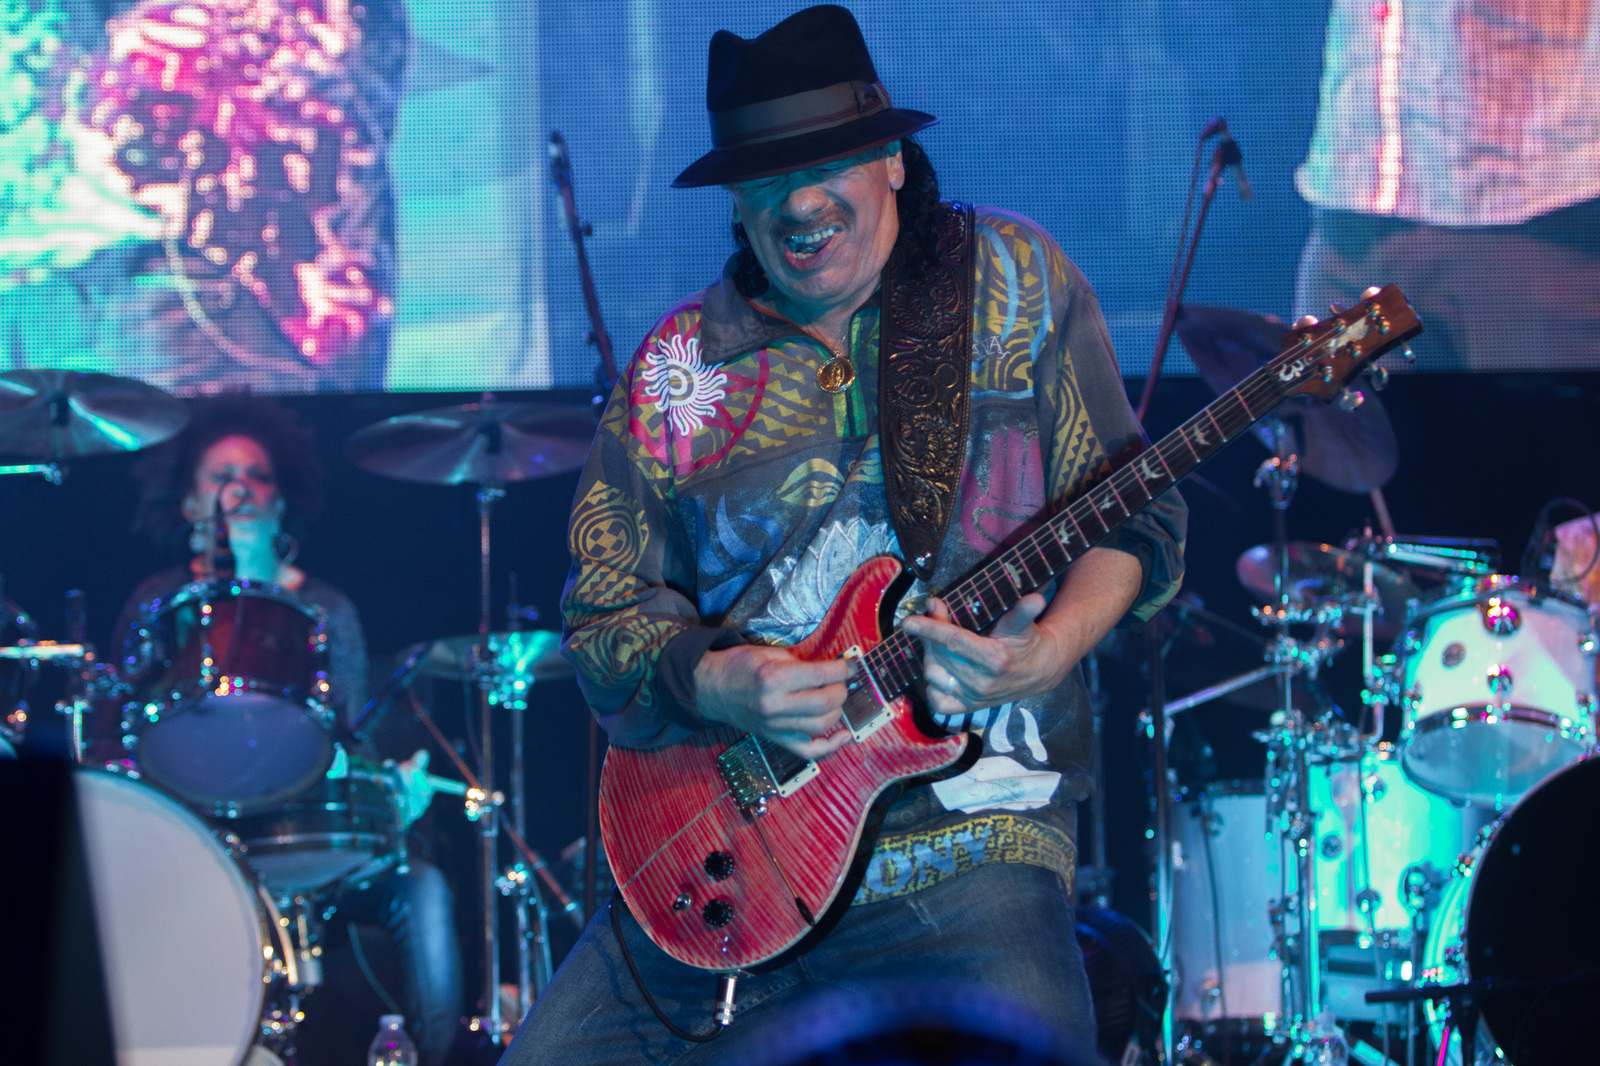 La música es lo que le da fuerza a la gente: Santana